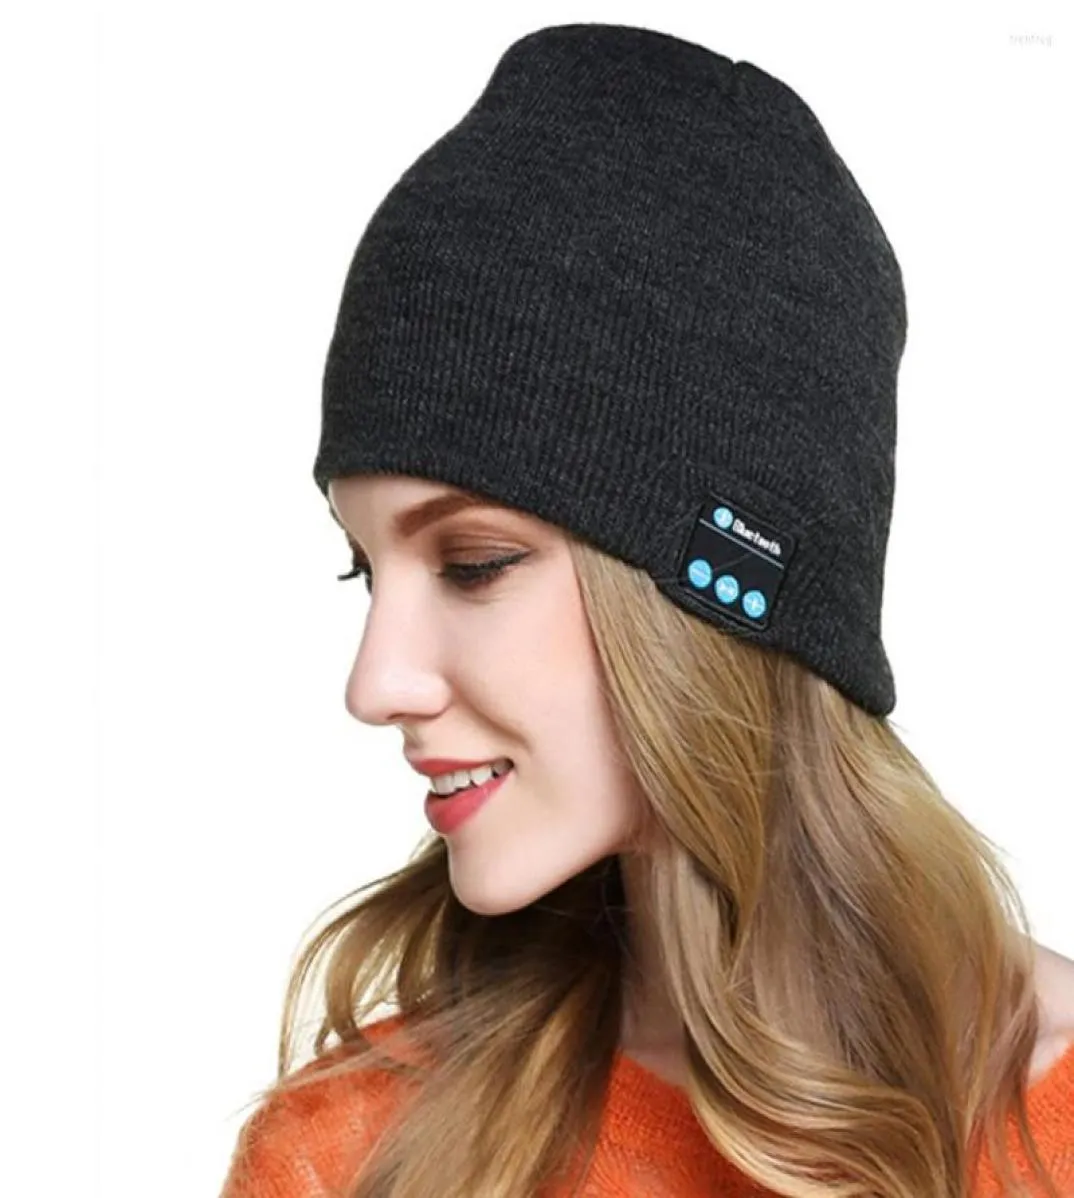 Зимние Bluetooth-совместимые наушники, USB аккумуляторная музыкальная гарнитура, теплая вязаная шапка, шапка, беспроводные спортивные наушники3401823